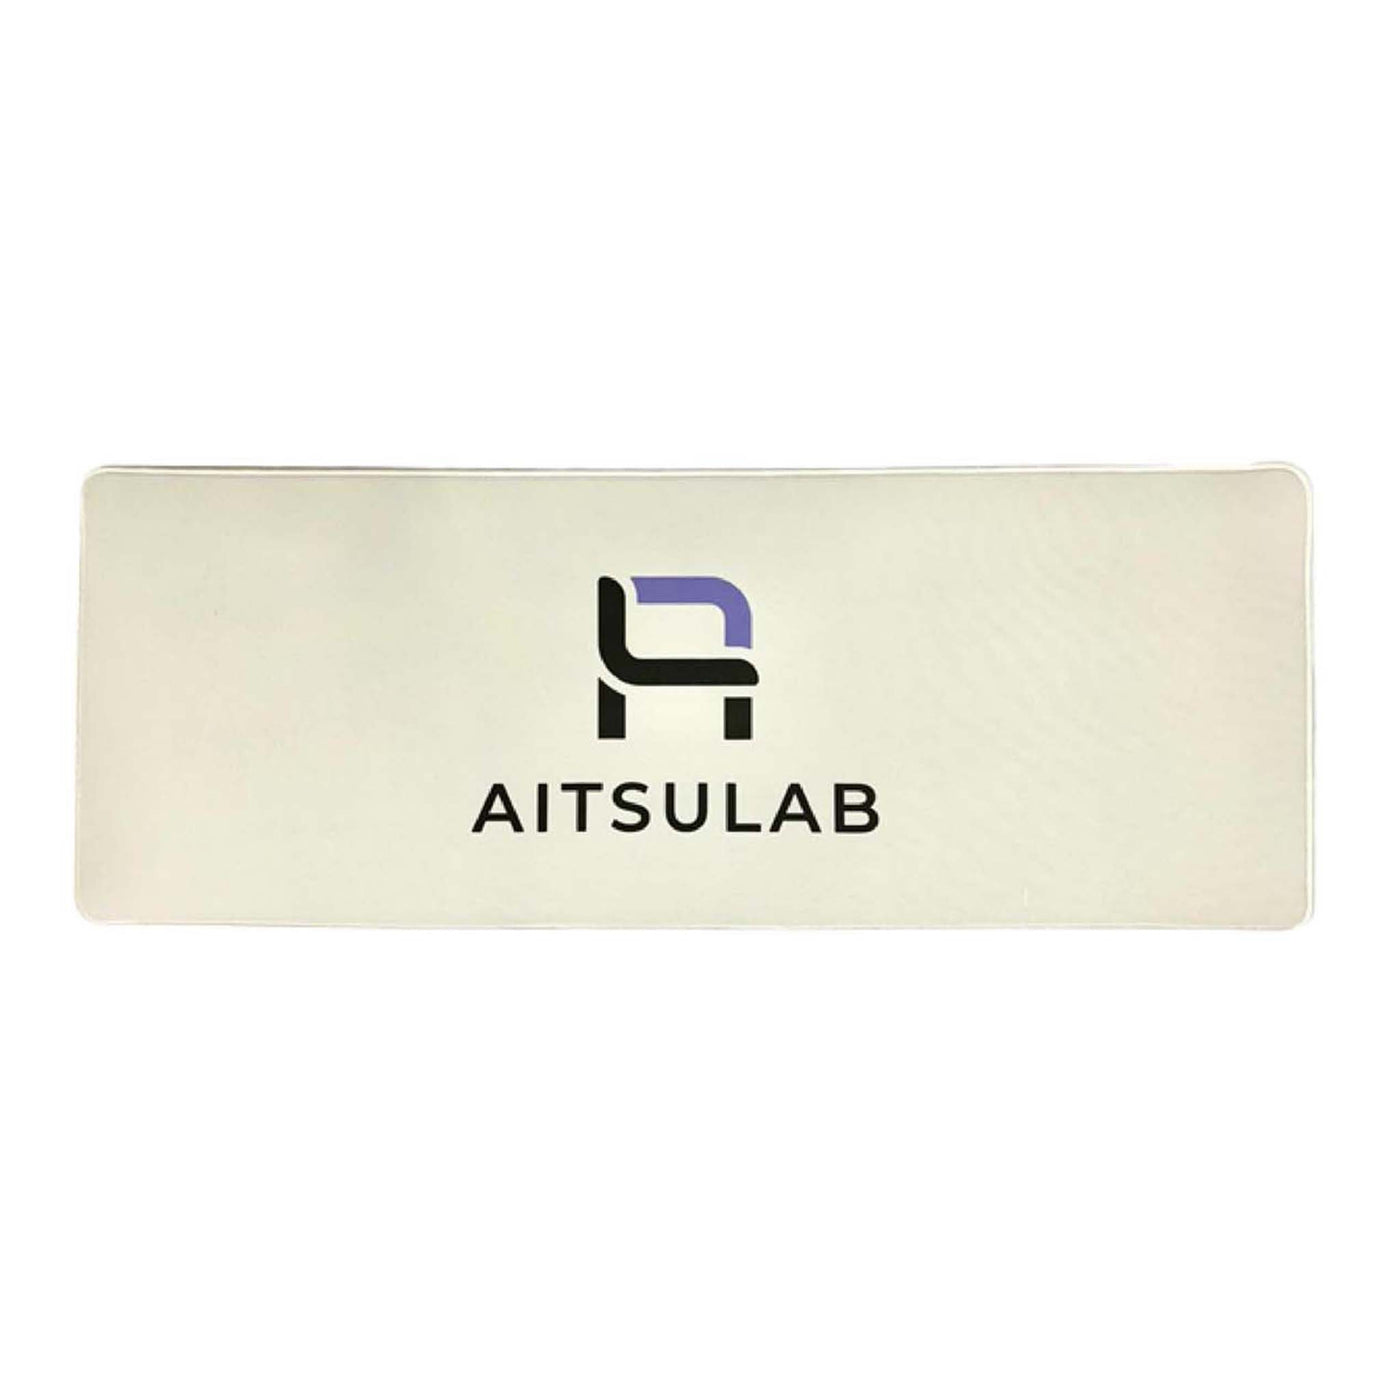 AITSULAB logos